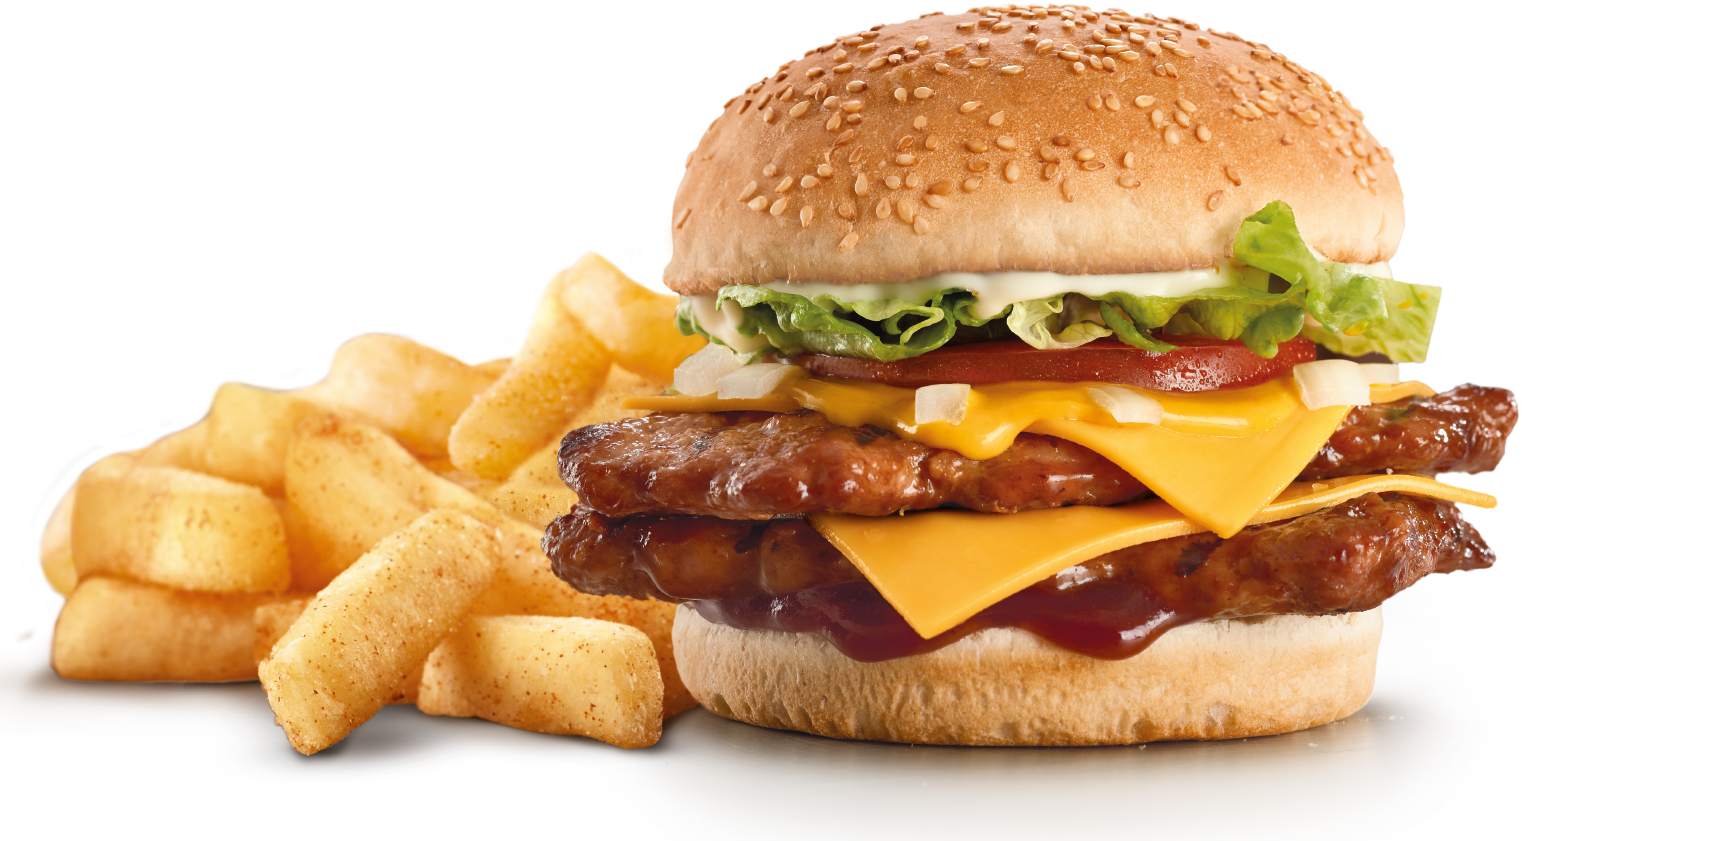 King Hamburger Food Ribs Fries Fast Burger PNG Image